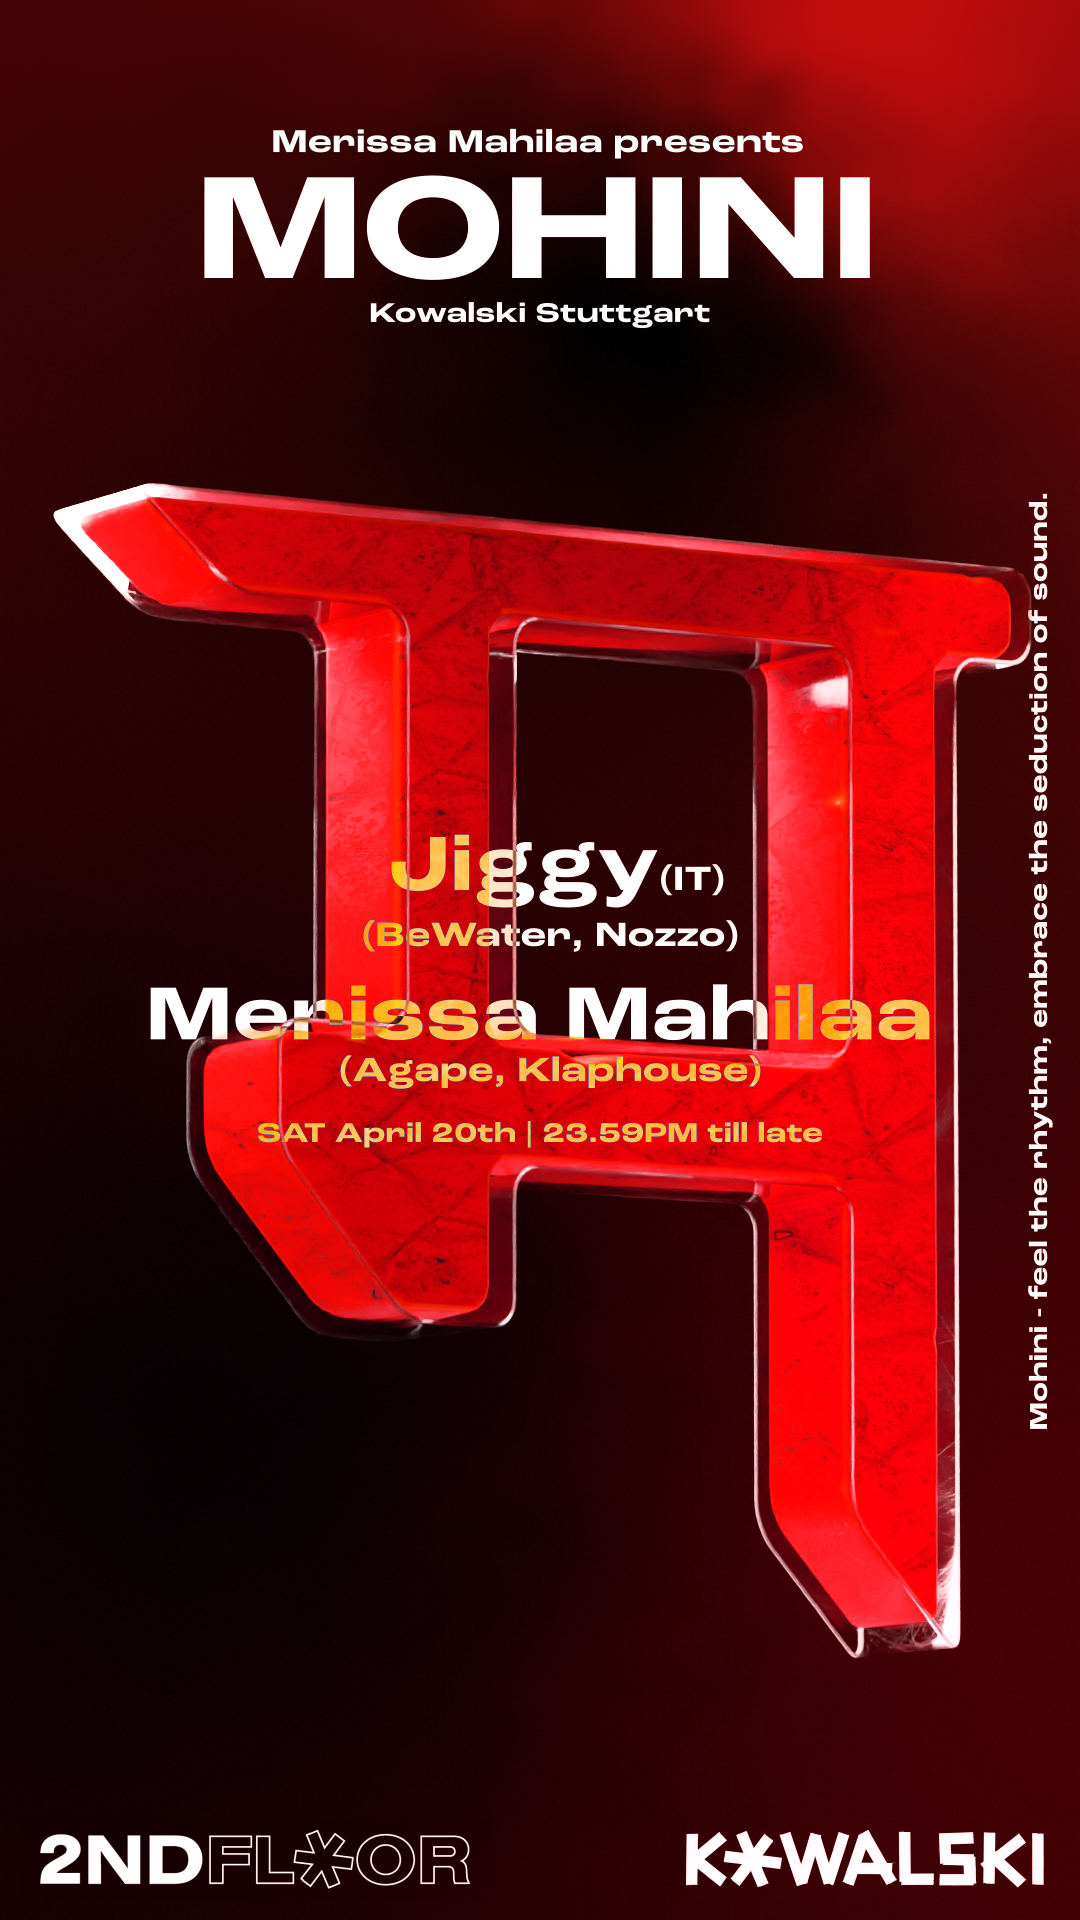 Mohini w/ Jiggy (IT) & Merissa Mahilaa  - フライヤー表